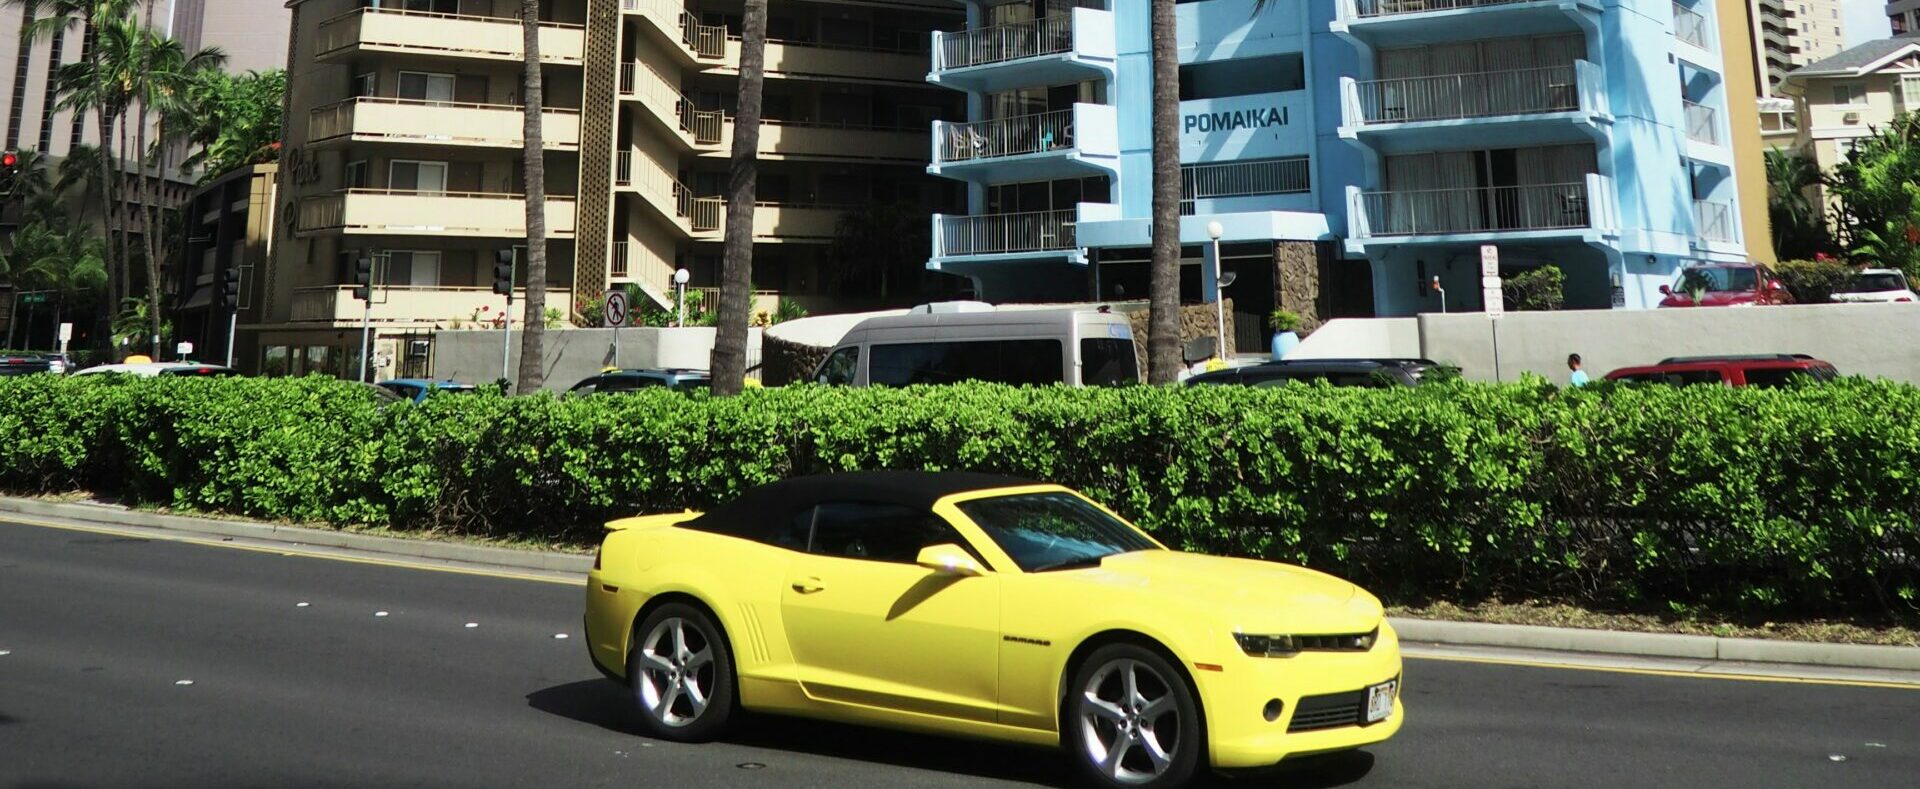 Yellow convertible drives down Ala Moana Boulevard in Waikiki Beach, Hawaii.